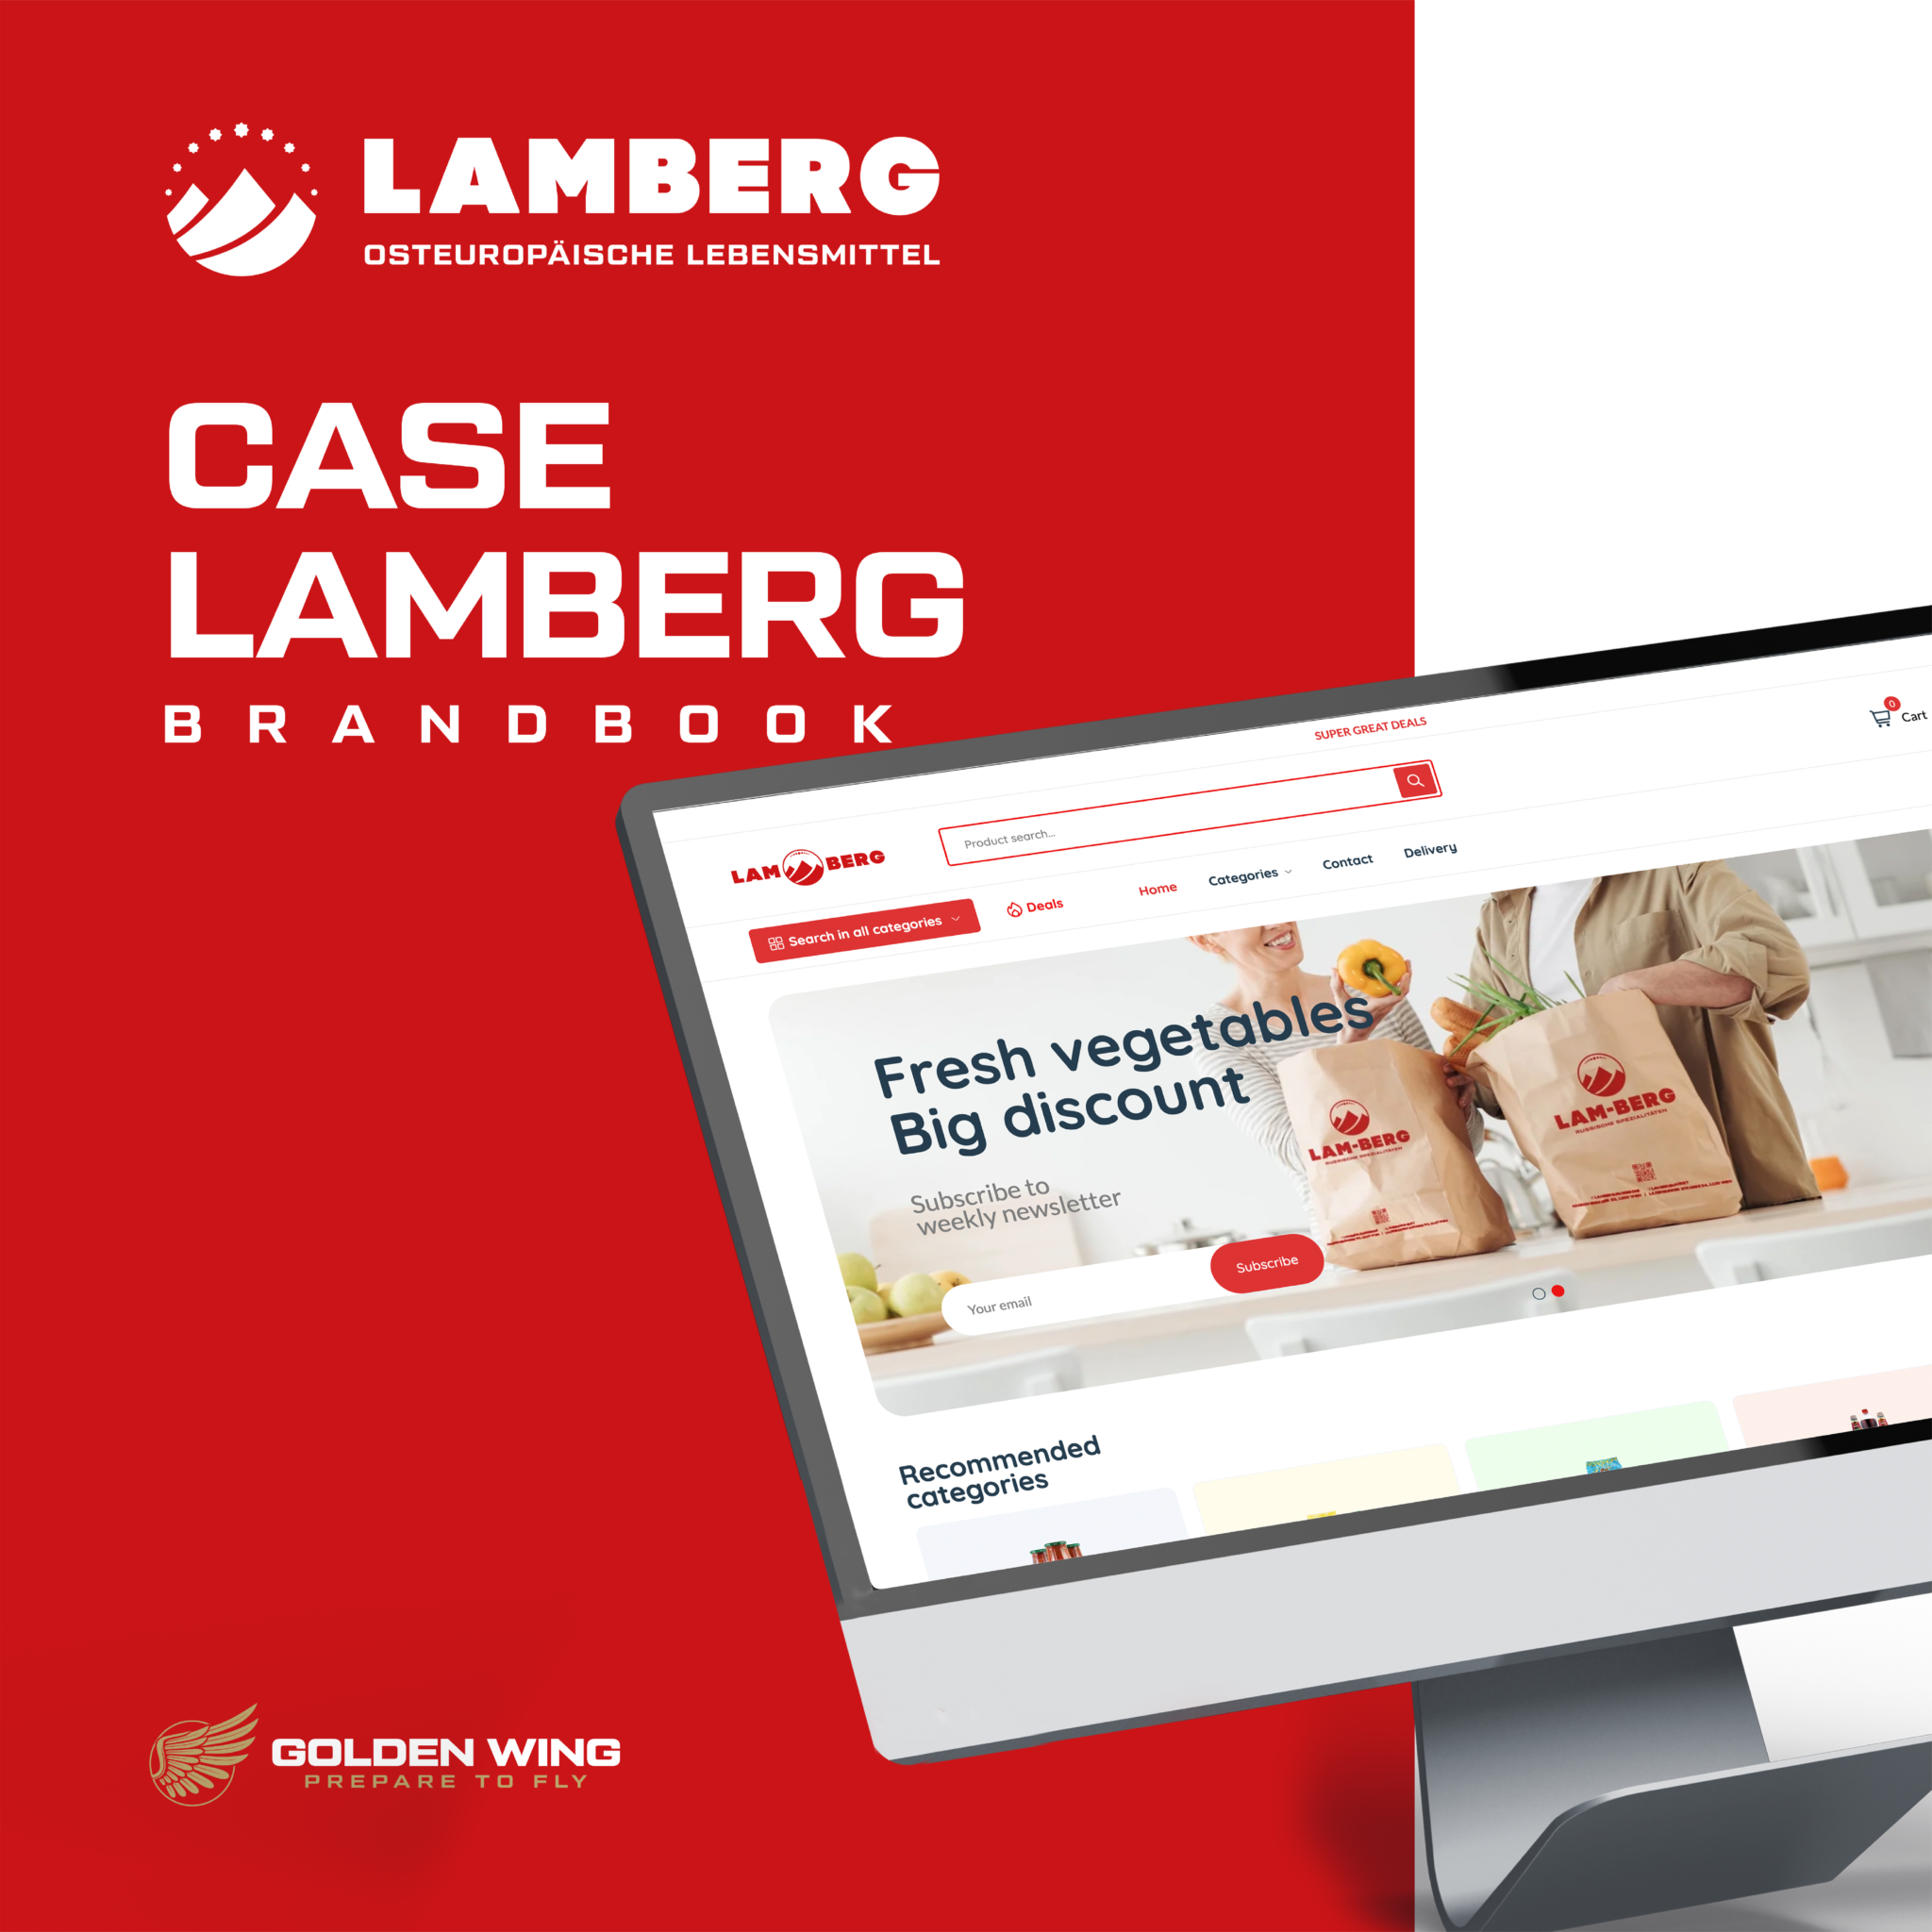 Lamberg Brand Book Cover zeigt die Online-Shop-Oberfläche auf einem Computerbildschirm und betont das technische Design des Lamberg-Logos. Das Bild spiegelt die sorgfältigen Branding-Bemühungen und E-Commerce-Fähigkeiten von Lamberg wider.